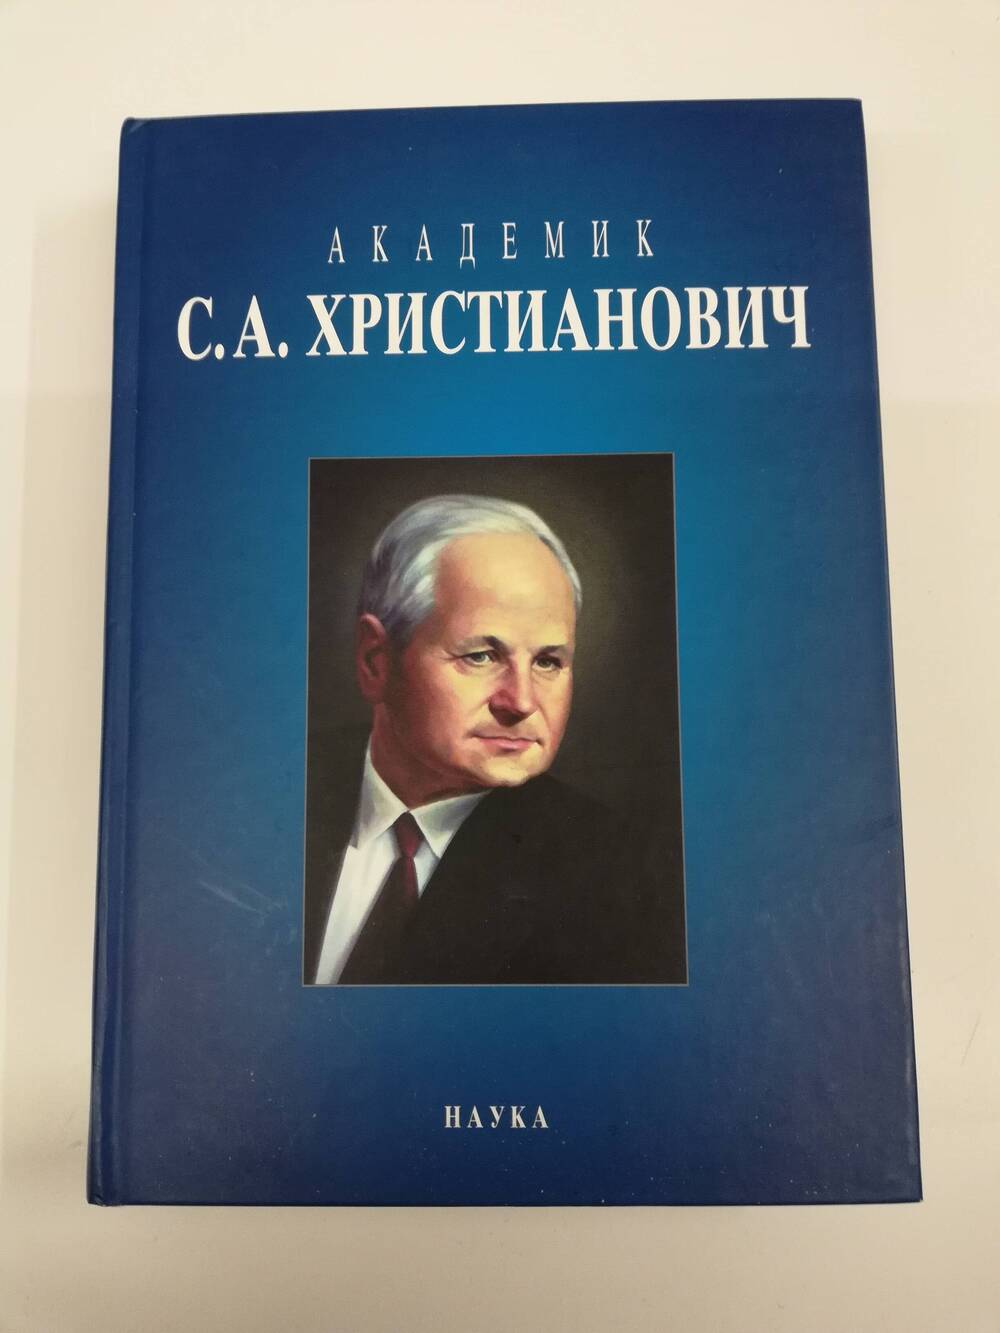 Книга Академик С.А. Христианович